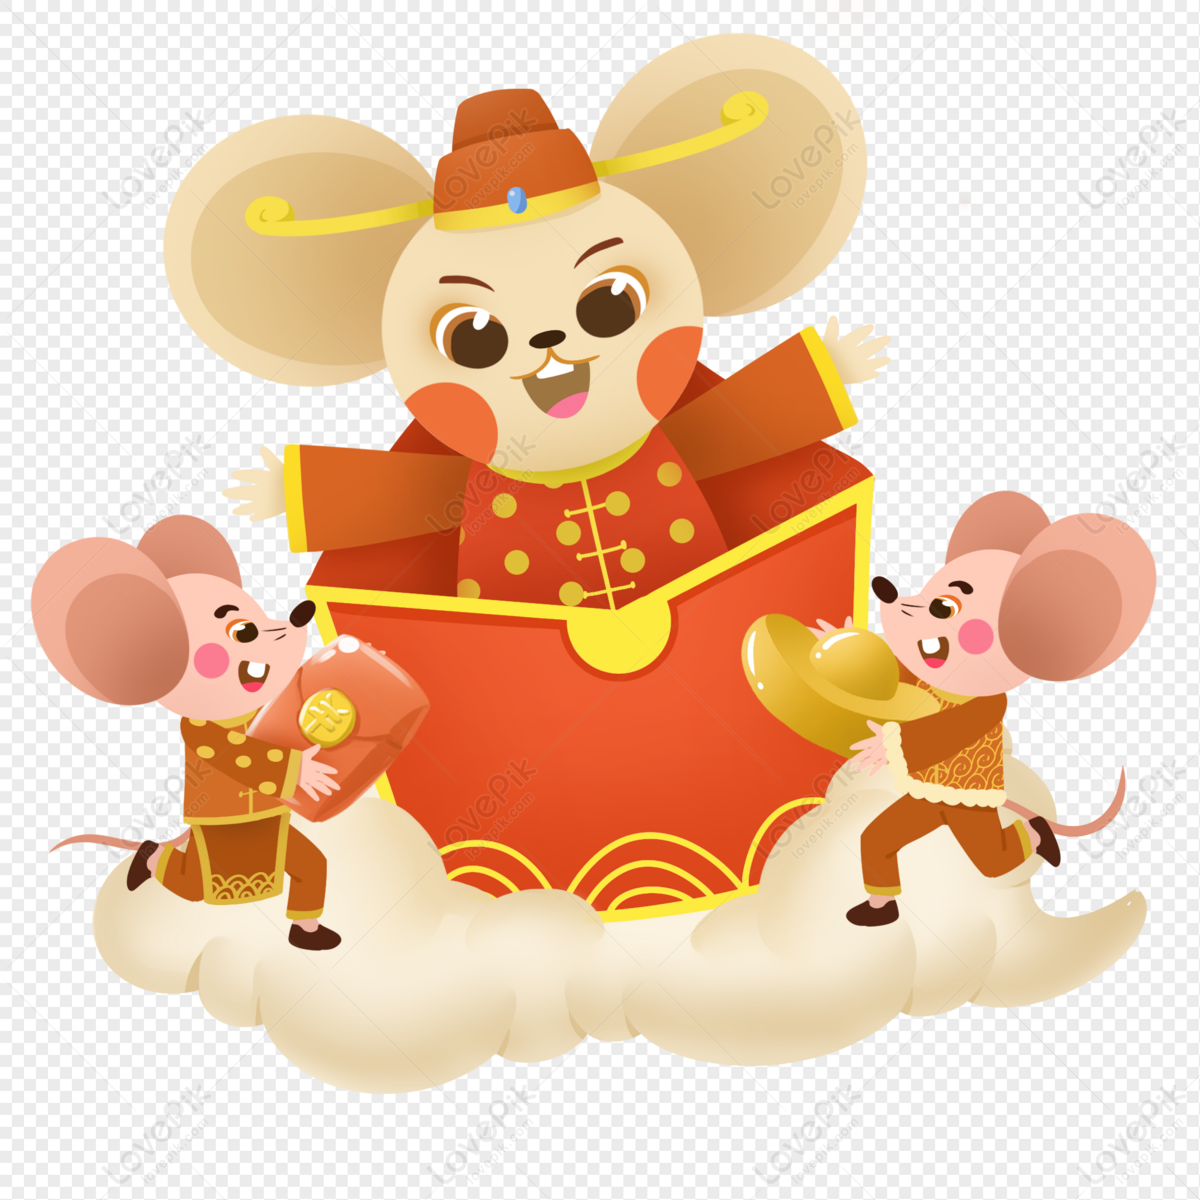 Năm Con Chuột là một trong những biểu tượng quan trọng trong văn hóa Trung Quốc, đại diện cho sự thông minh, sáng tạo và may mắn. Hãy vô xem ngay hình ảnh để tìm hiểu về ý nghĩa của Năm Con Chuột trong văn hóa phương Đông.